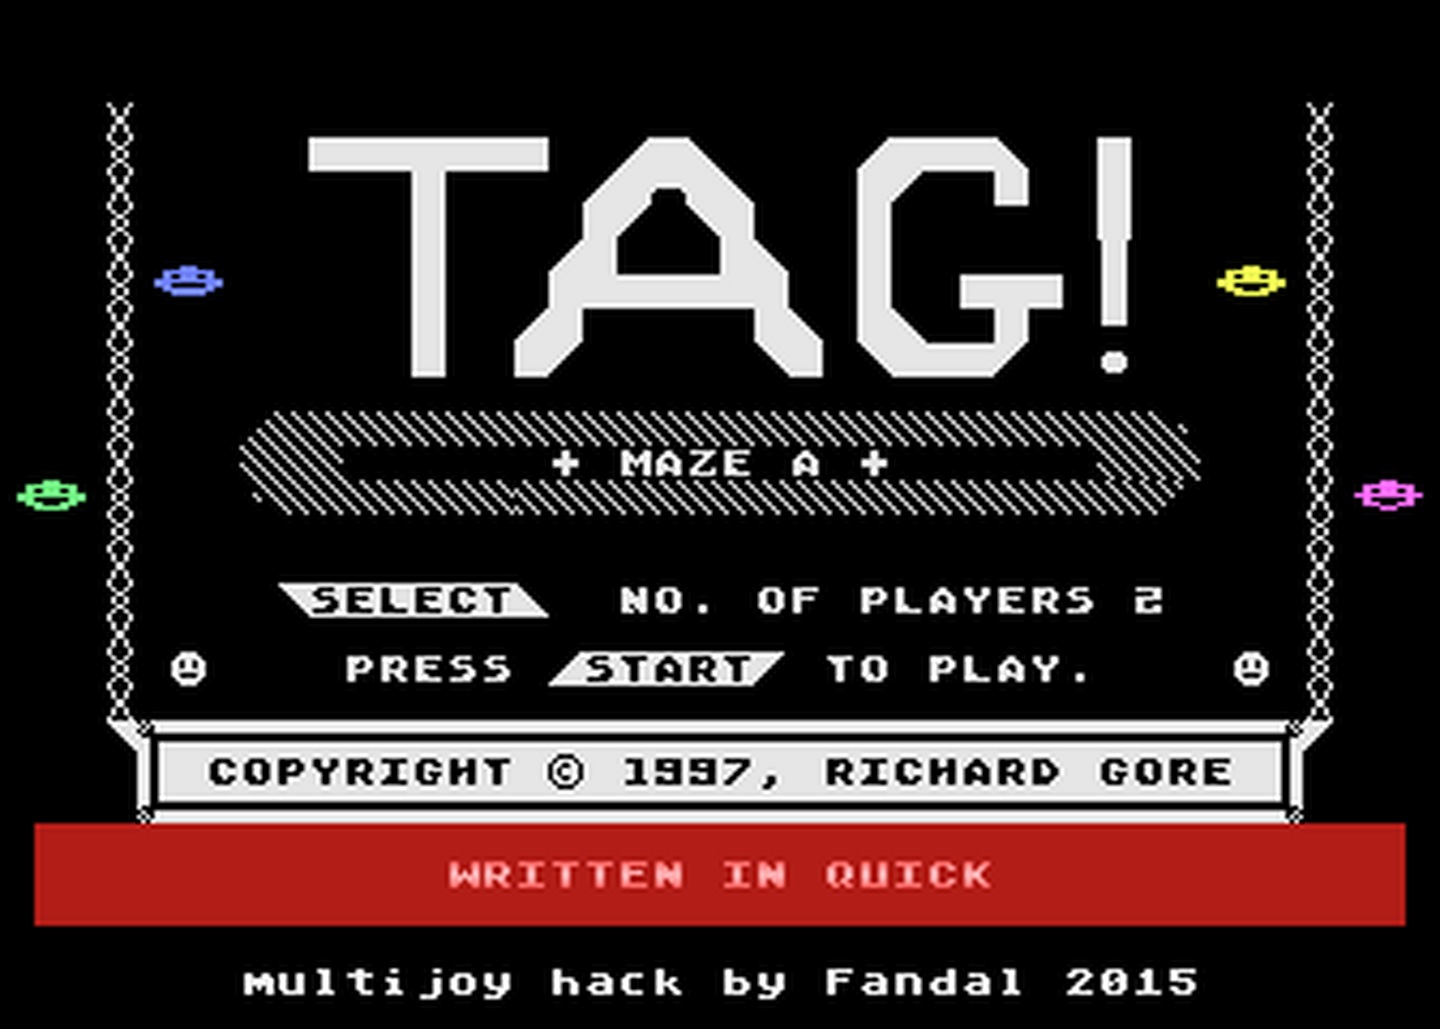 Atari GameBase Tag!_M4 2015